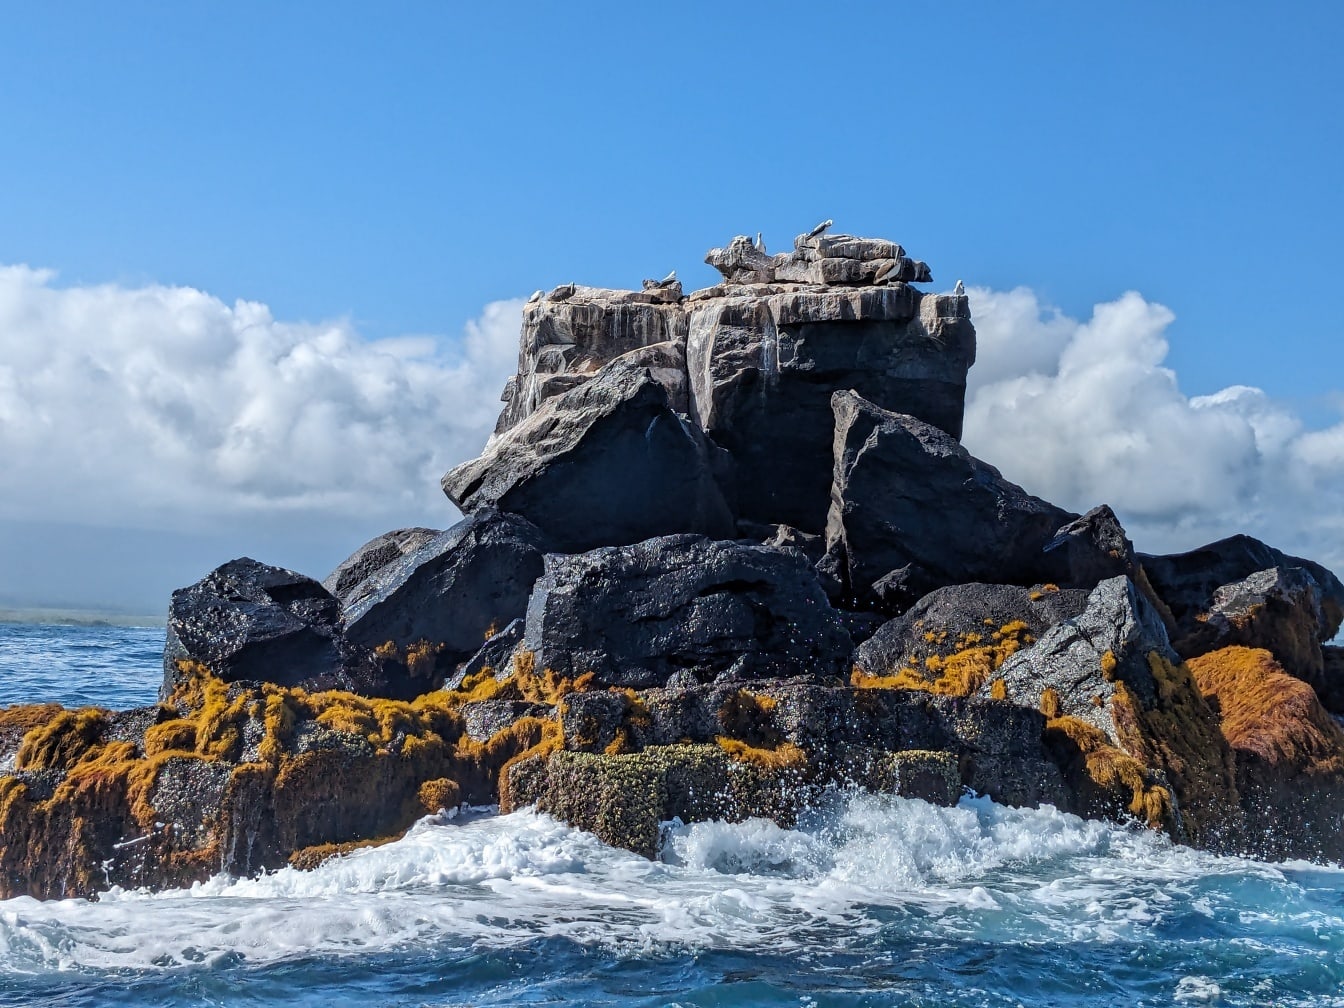 Sự hình thành đá văng tung tóe bởi những con sóng của Thái Bình Dương trong công viên tự nhiên trên đảo Galapagos